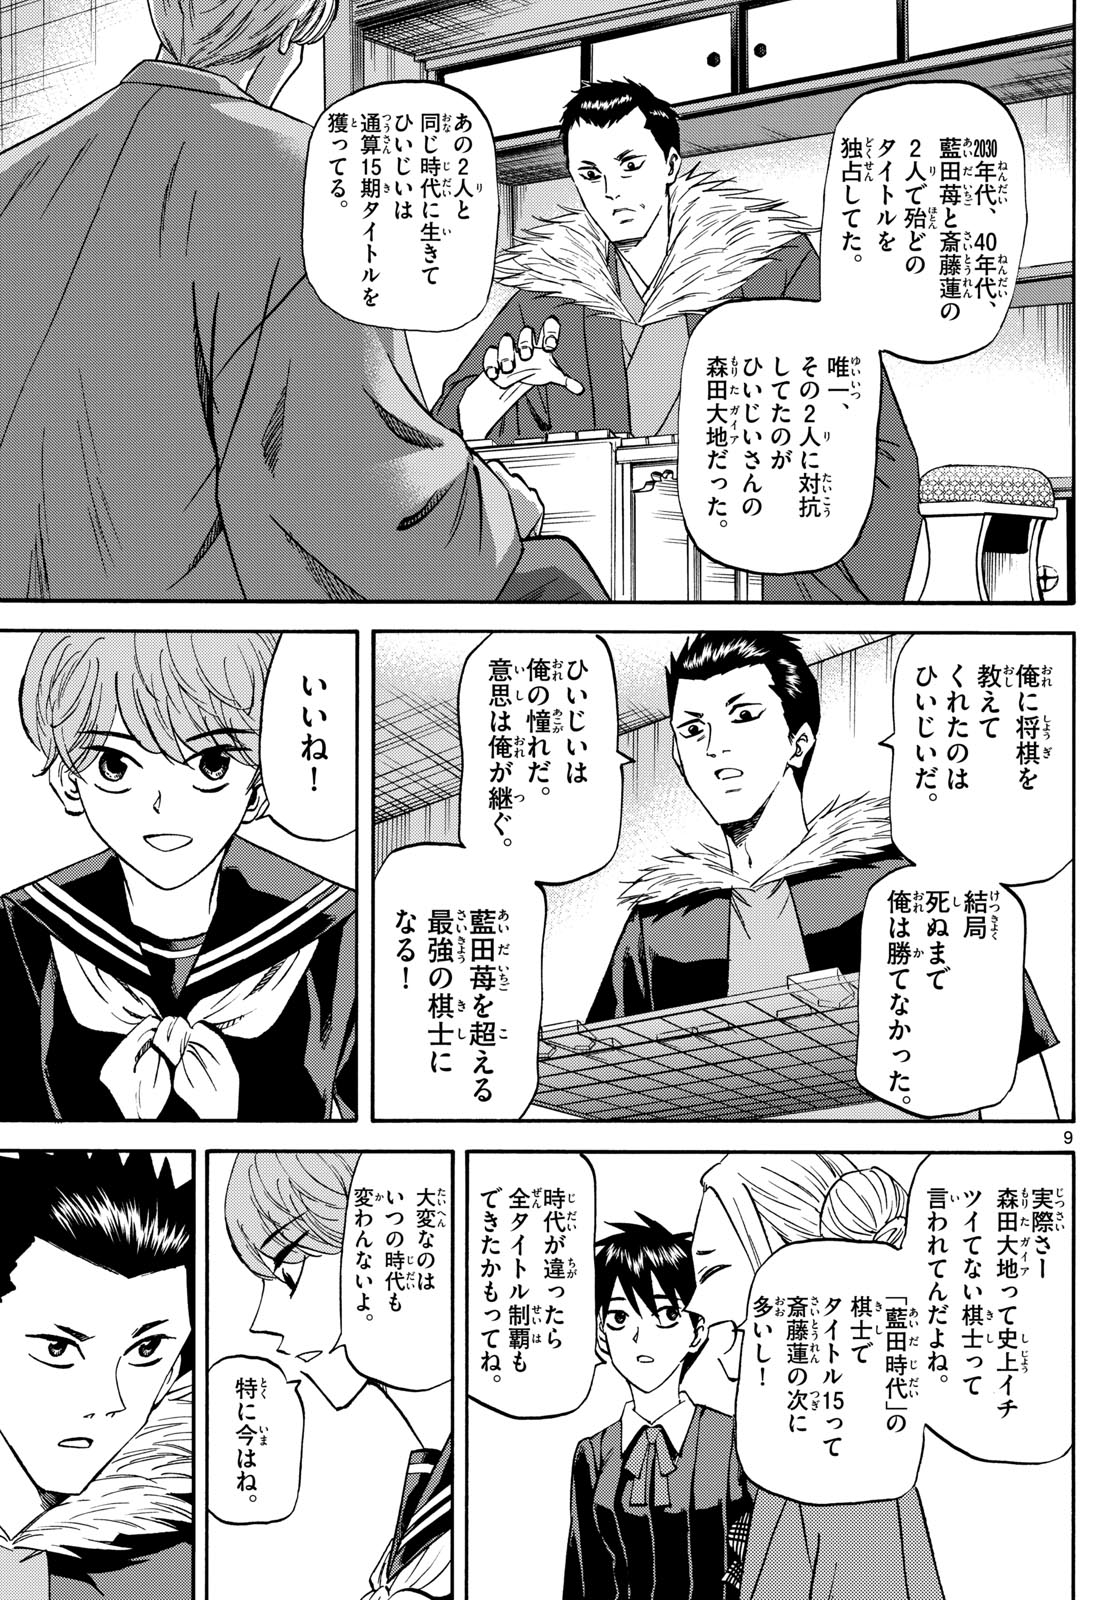 Tatsu to Ichigo - Chapter 183 - Page 9